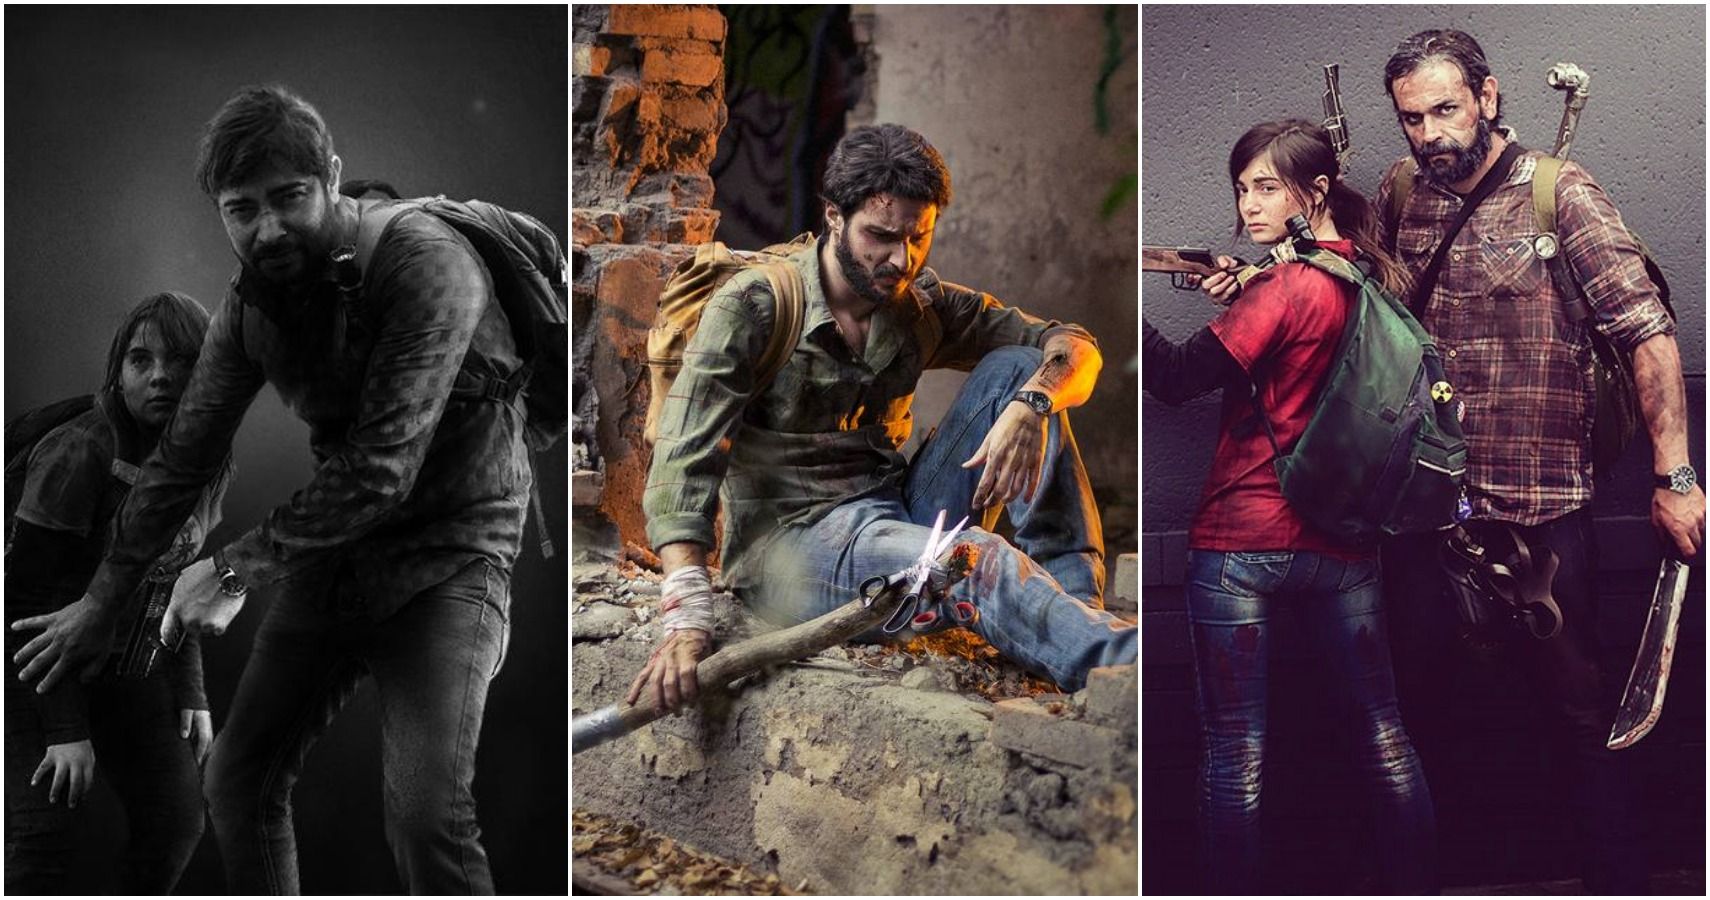 The Last of Us Set Video Teases Game-Accurate Joel & Ellie Scene